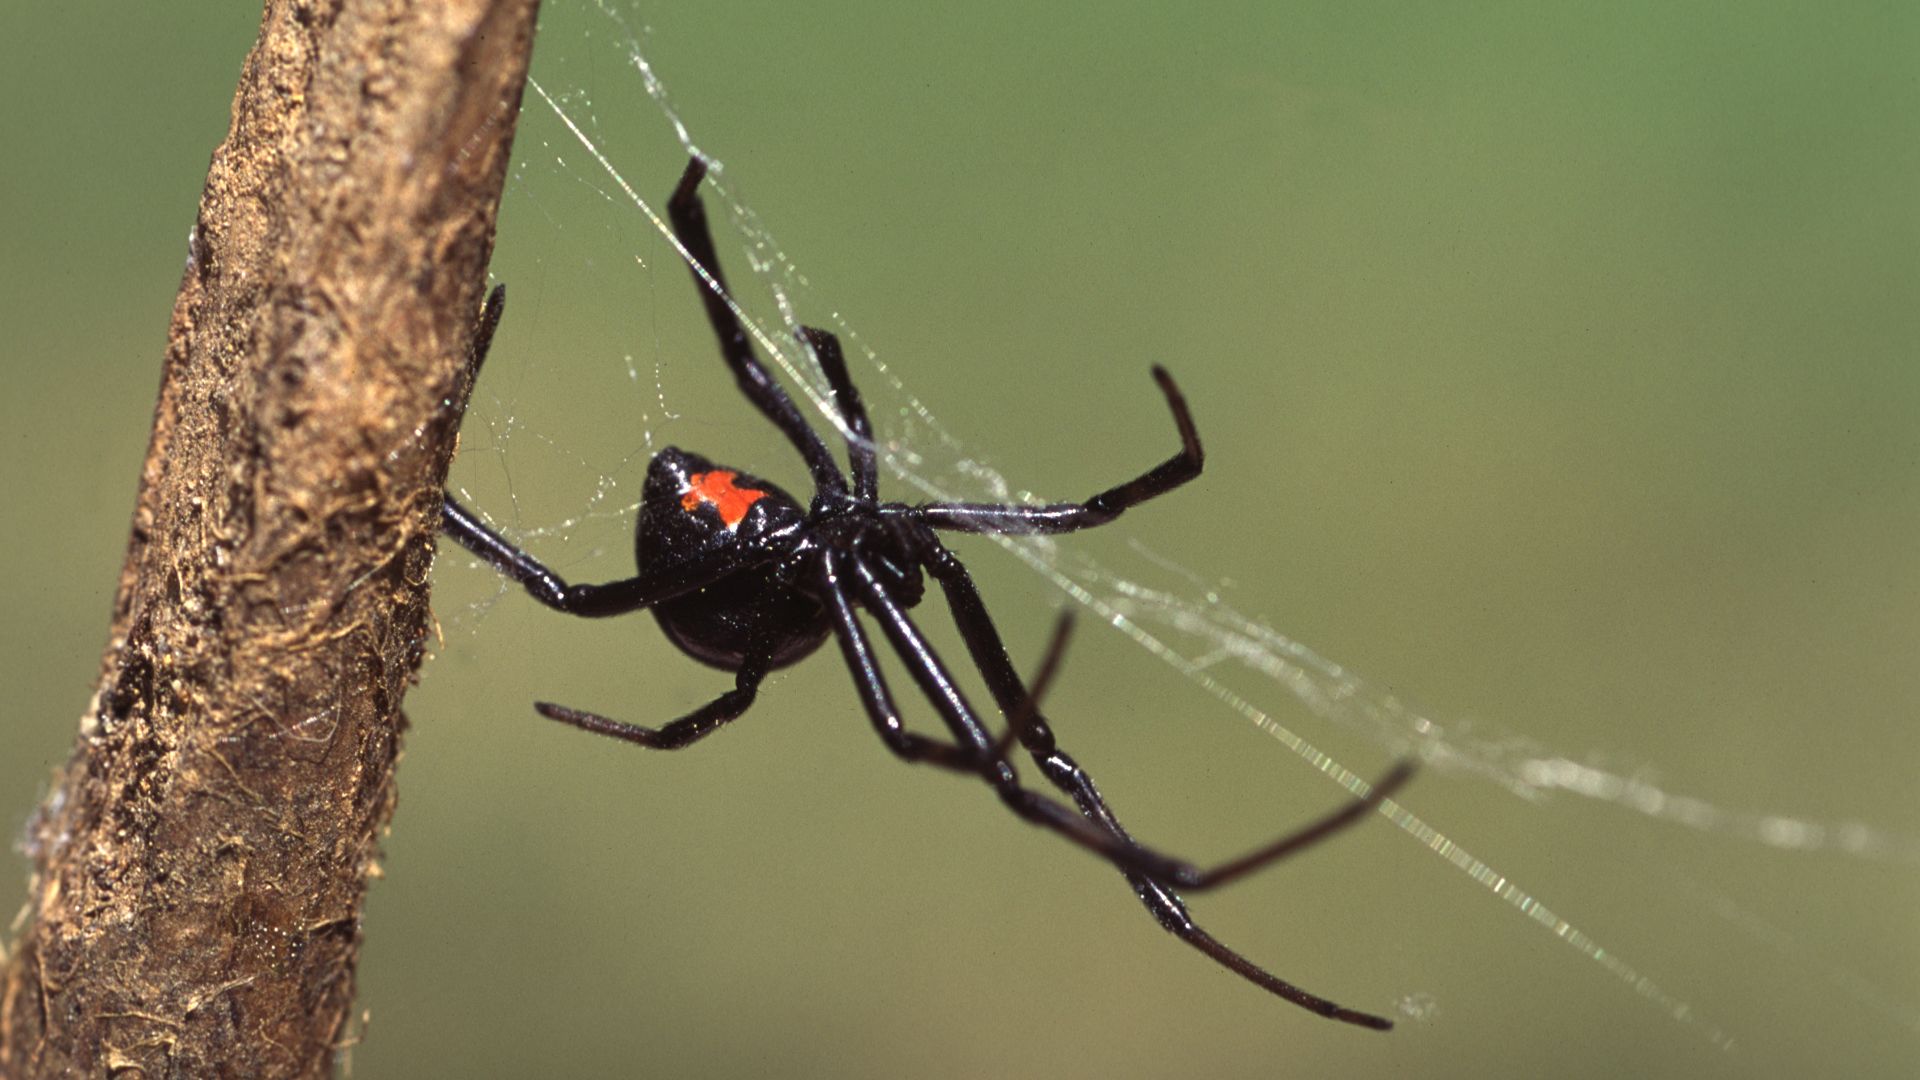 Mérges pókkal maratta meg magát három kisfiú, hogy Pókemberré változzanak